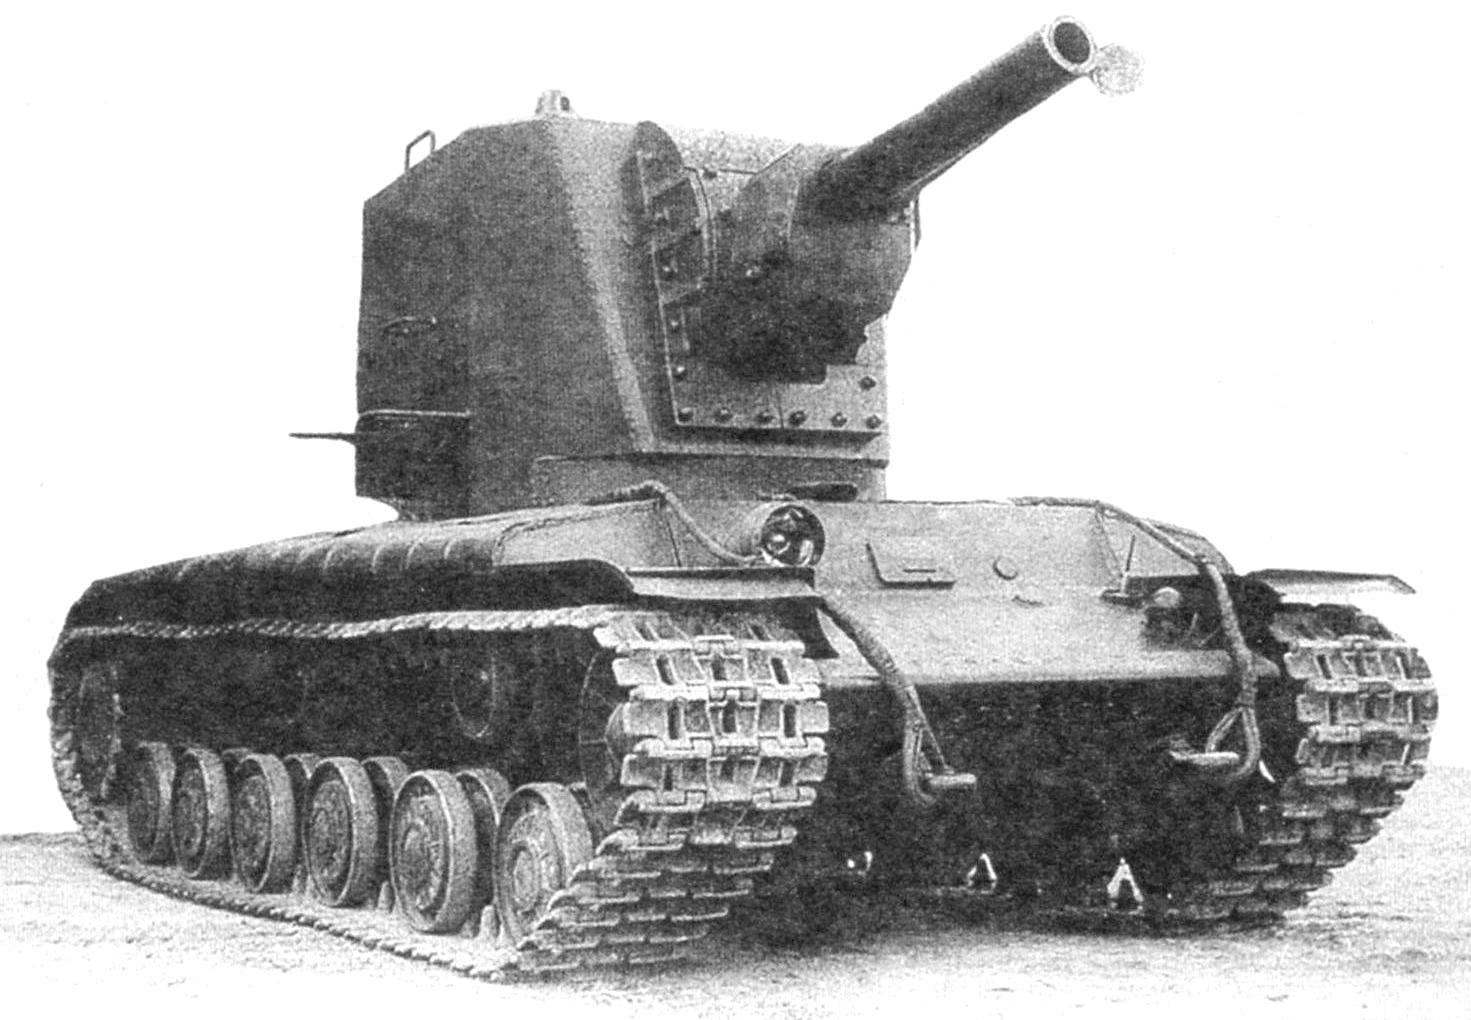 Опытный образец танка КВ-2. Отличается наклоном переднего броневого листа башни. Ствол пушки с заглушкой для предотвращения попадания в него пуль и осколков